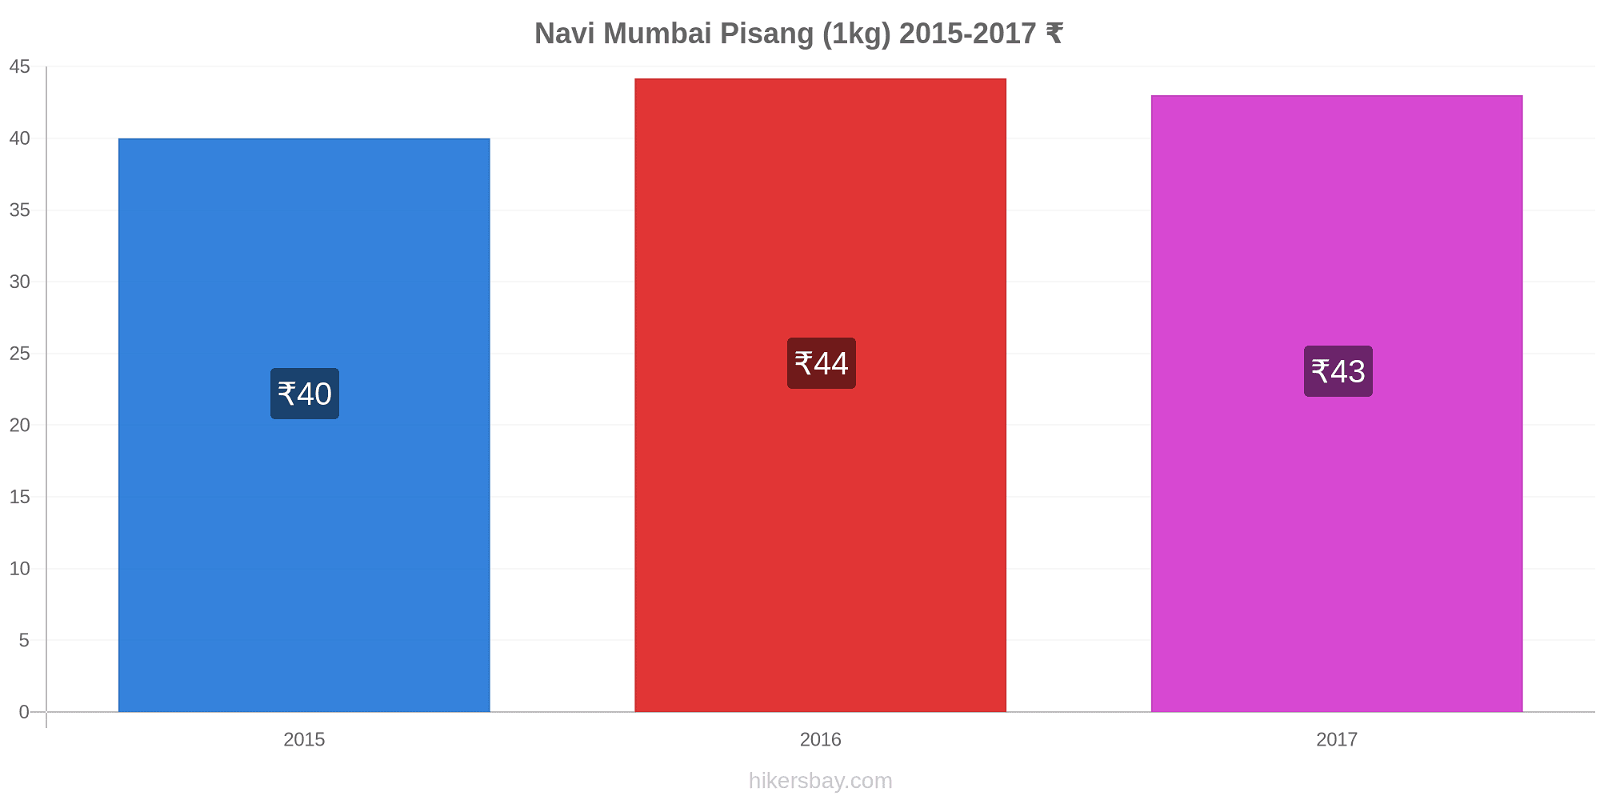 Navi Mumbai perubahan harga Pisang (1kg) hikersbay.com